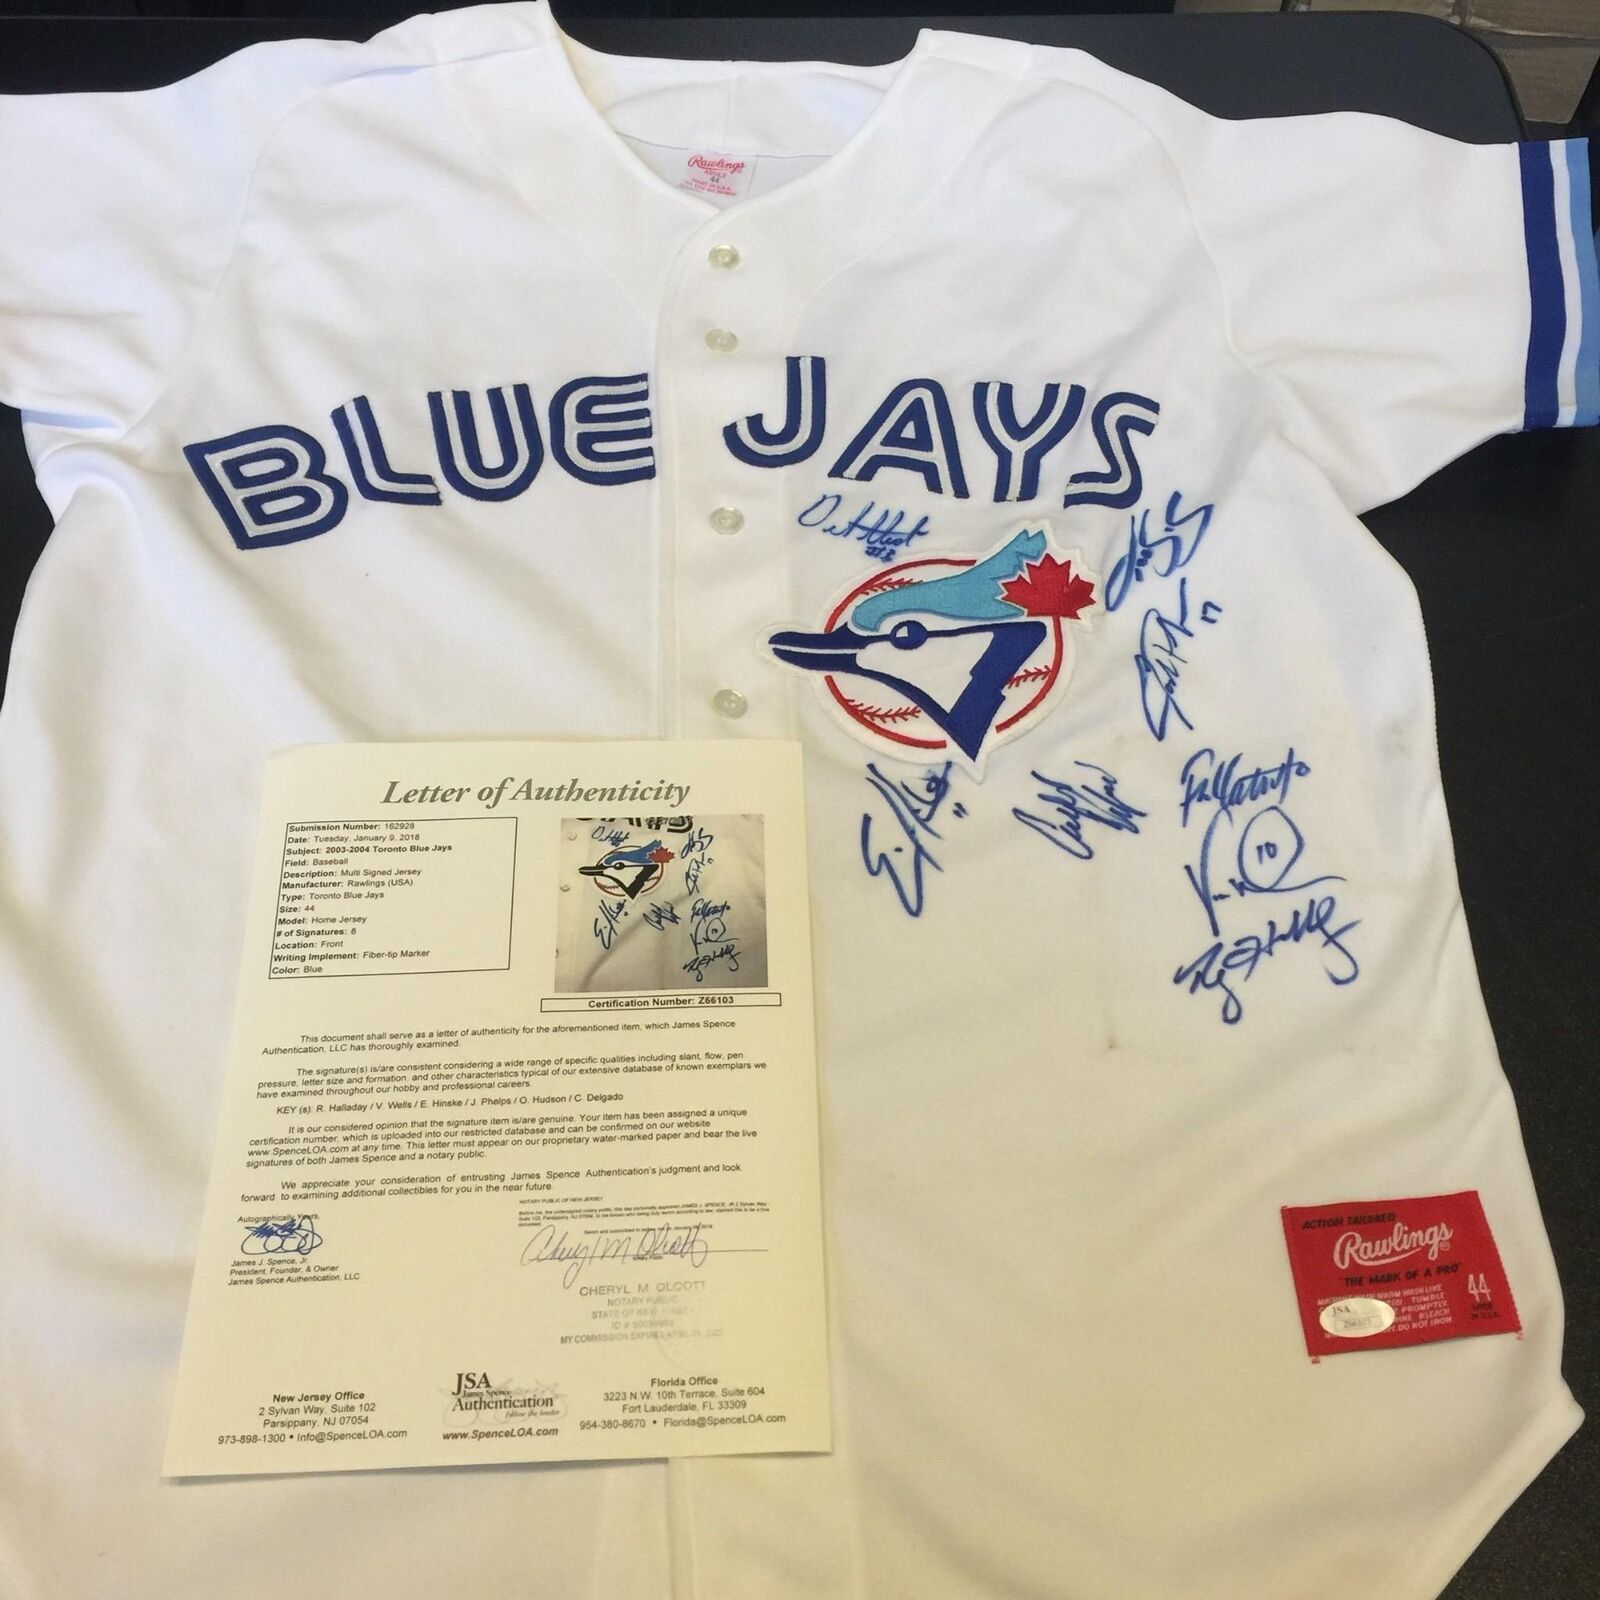 2003 blue jays jersey